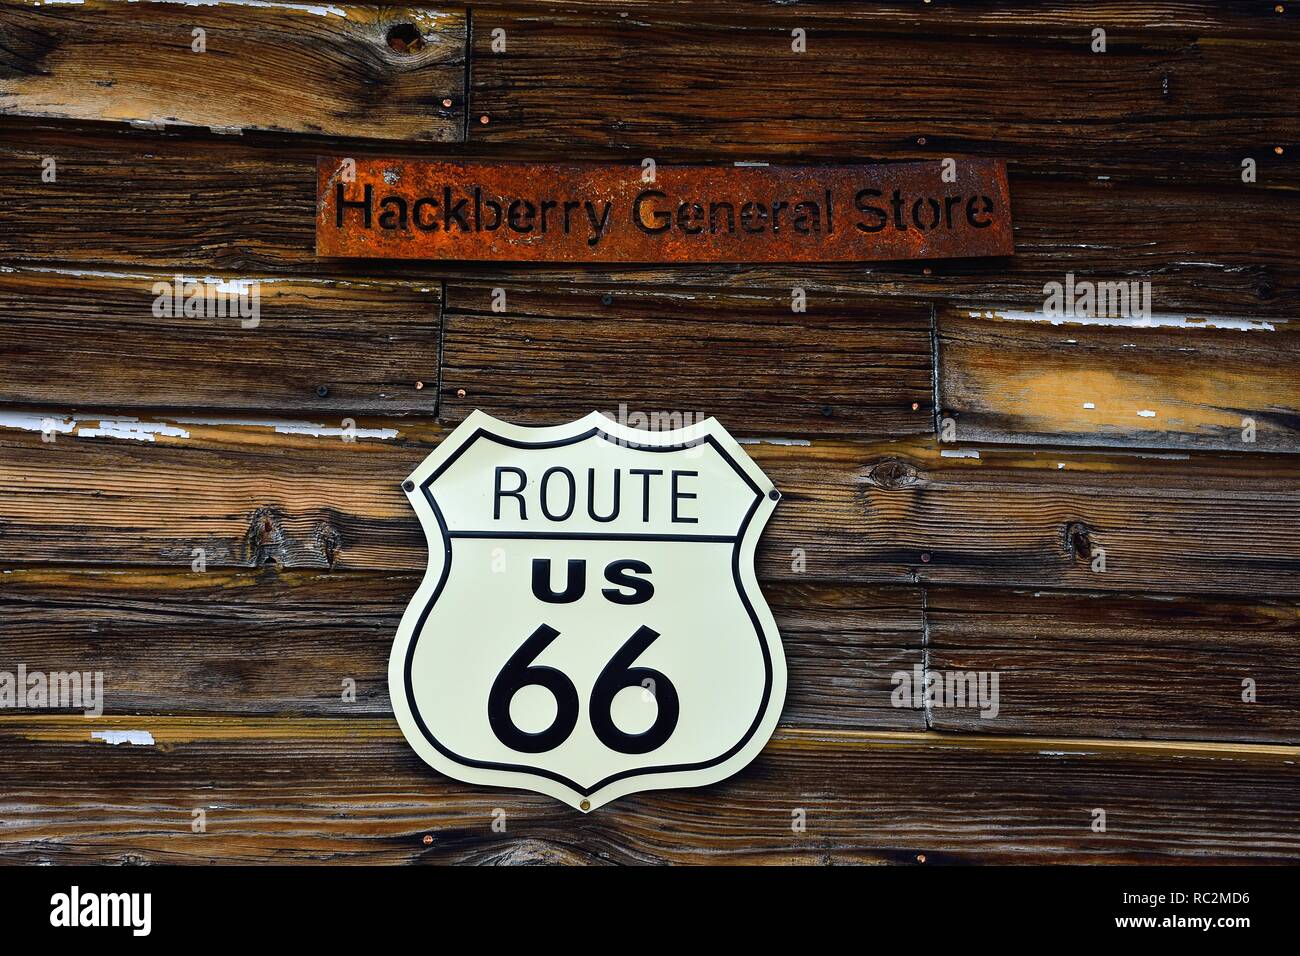 Hackberry, Arizona, USA - 24. Juli 2017: Die berühmten historischen Route 66 Highway mit dem alten General Store von Menschen aus aller Welt besucht wird. Stockfoto